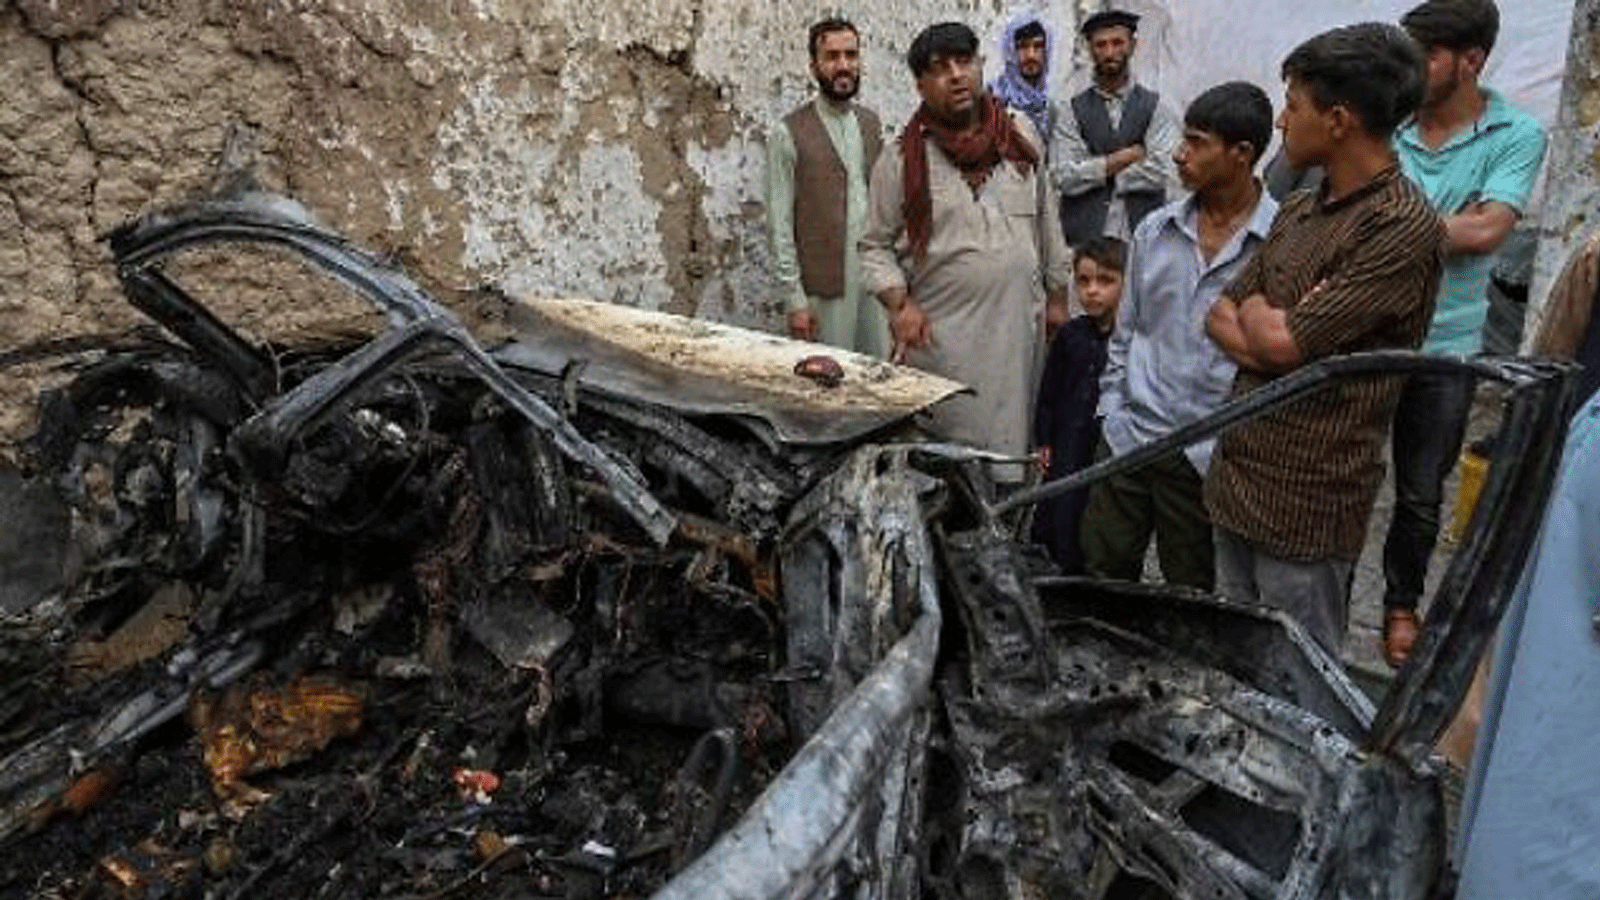 سكان أفغان وأفراد عائلات الضحايا يتجمعون بجوار سيارة مدمرة داخل منزل ، بعد يوم من غارة جوية أمريكية بطائرة بدون طيار في كابول في 30 أغسطس / آب 2021